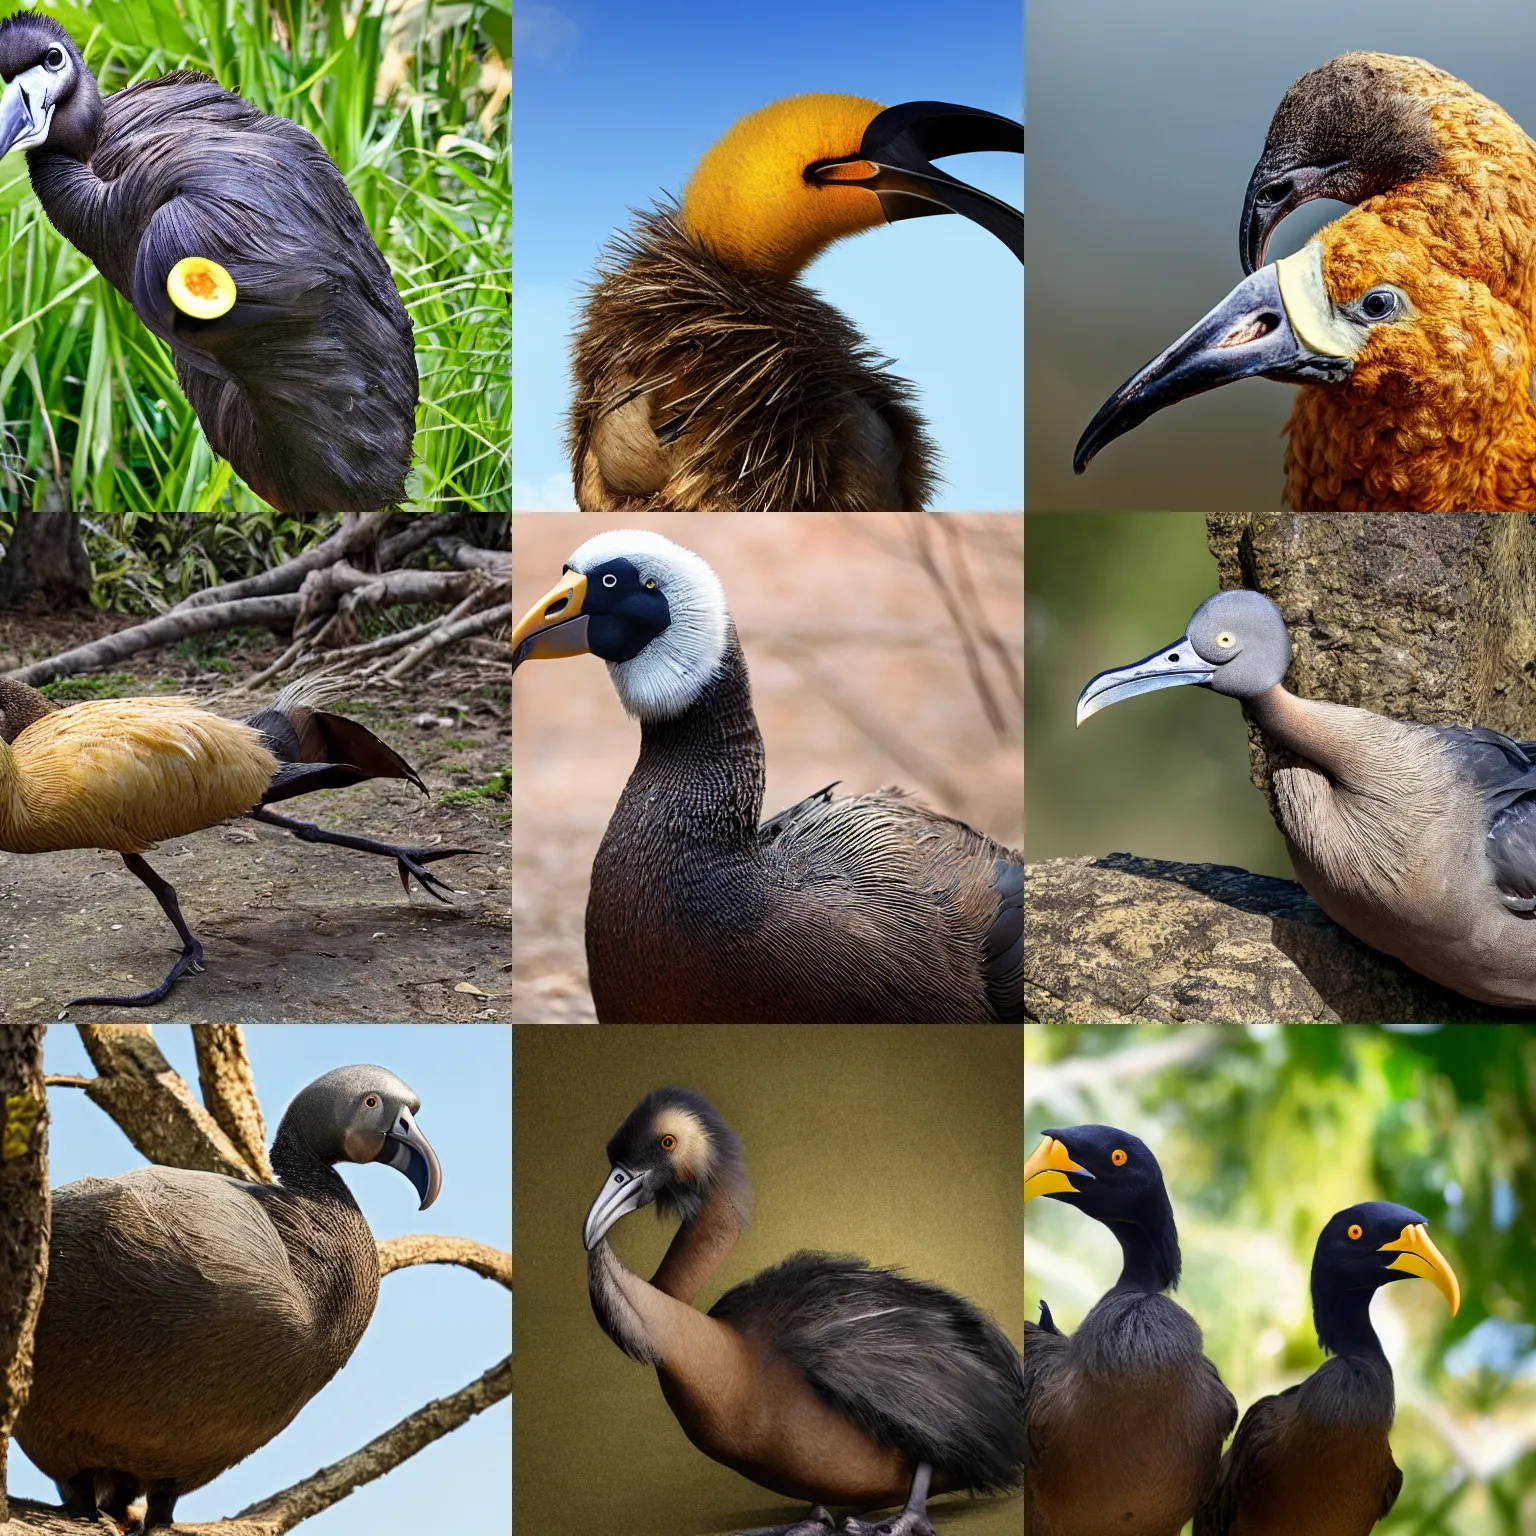 Prompt: dodo bird in natural habitat, 4k, realistic